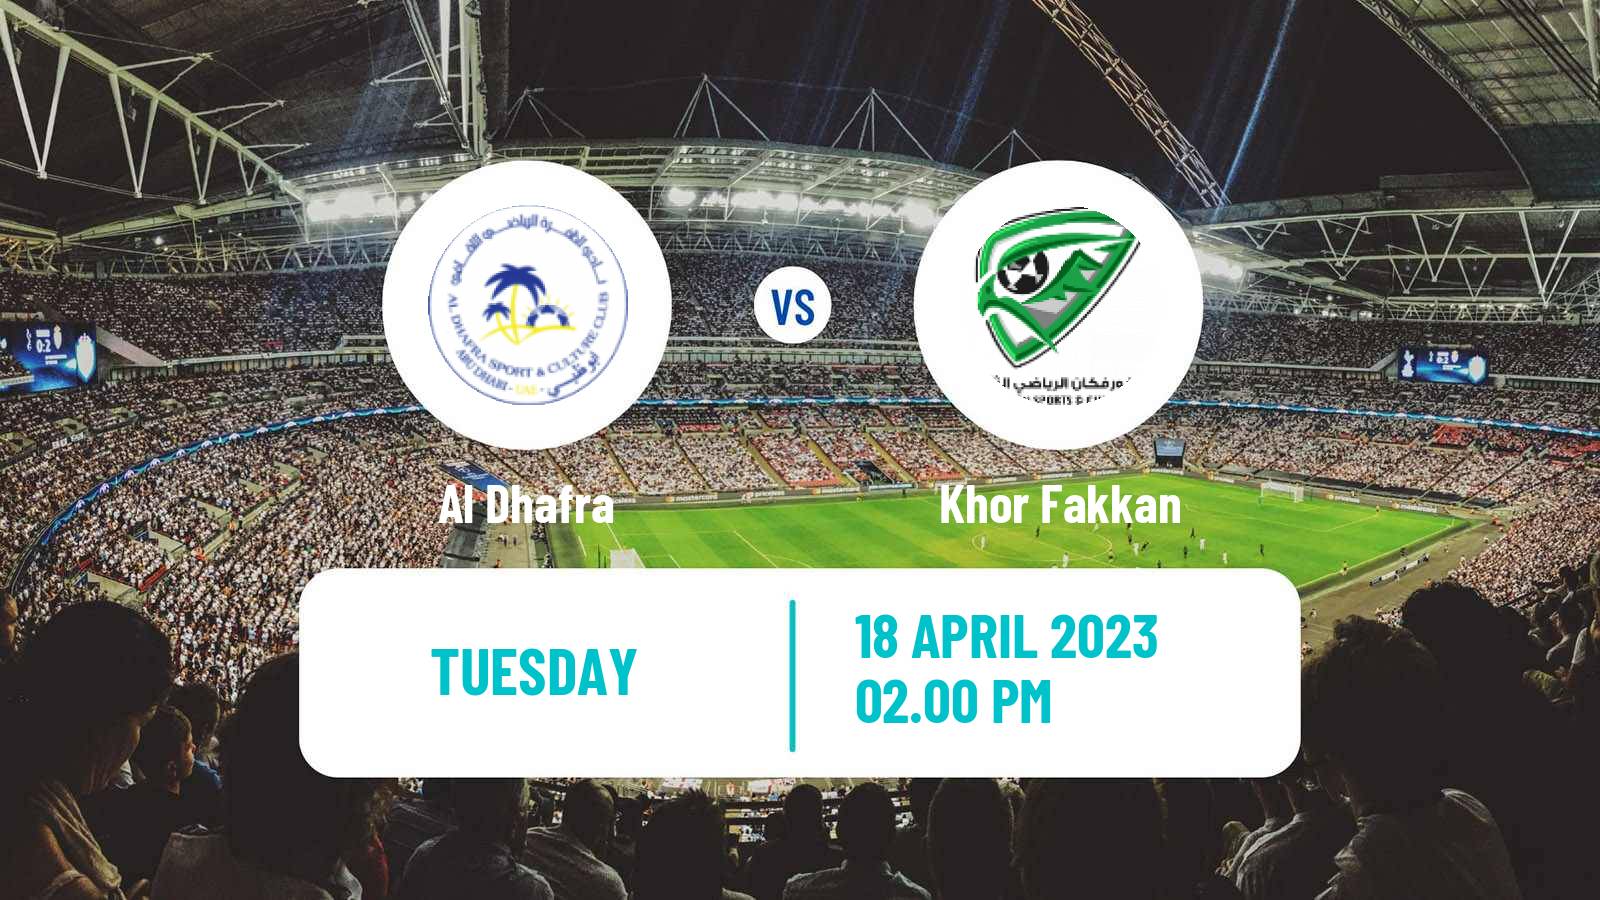 Soccer UAE Football League Al Dhafra - Khor Fakkan